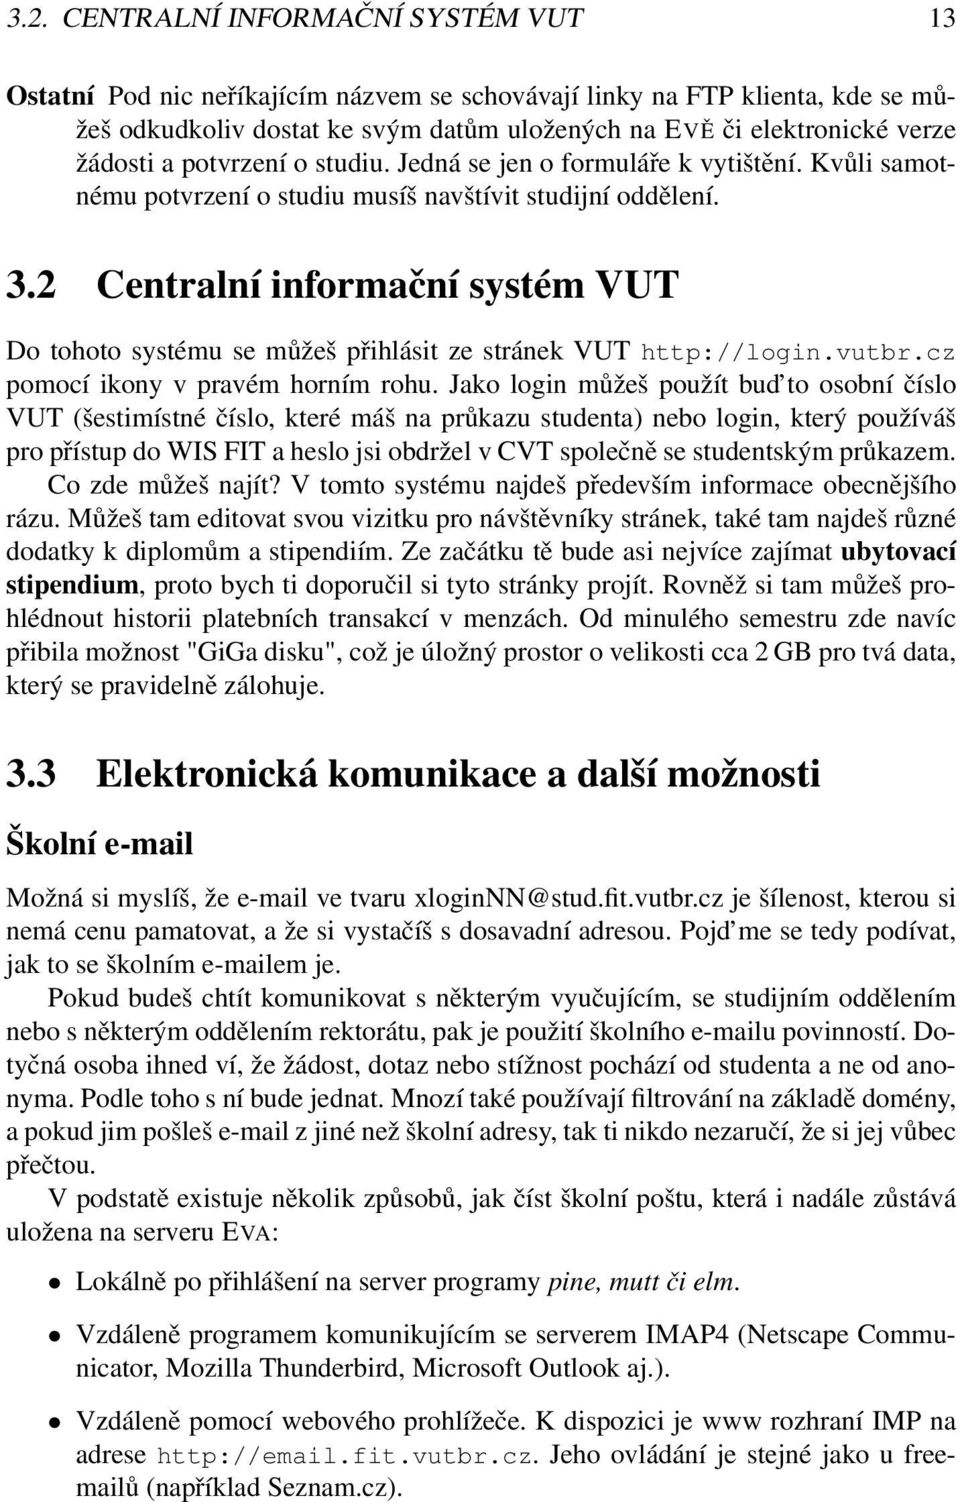 2 Centralní informační systém VUT Do tohoto systému se můžeš přihlásit ze stránek VUT http://login.vutbr.cz pomocí ikony v pravém horním rohu.